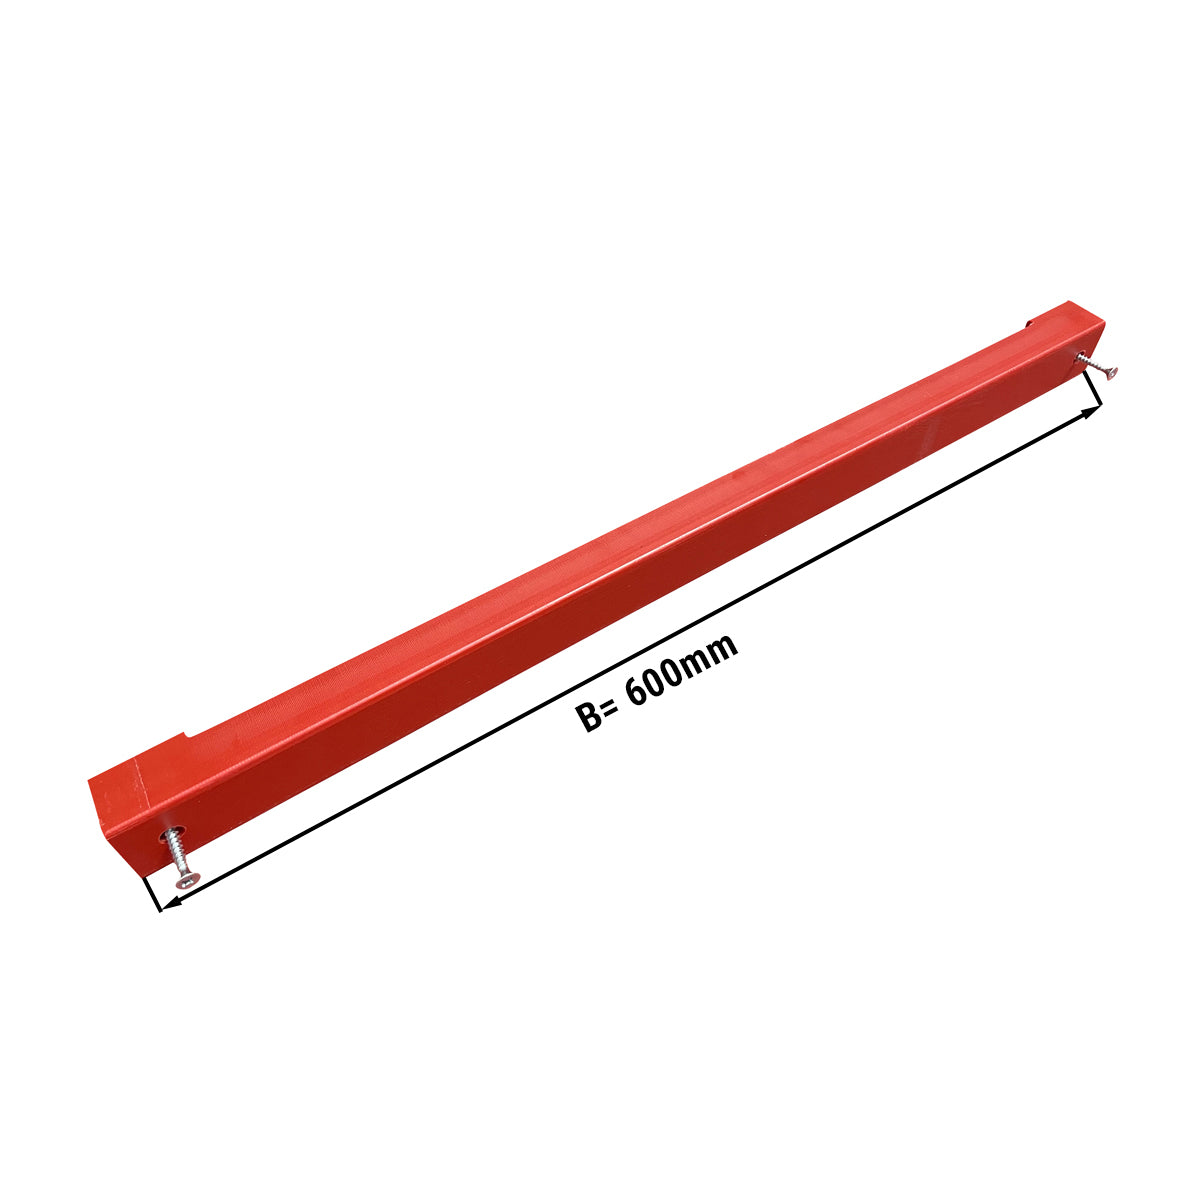 Knivholder til skjærebrett - 60 cm - rød